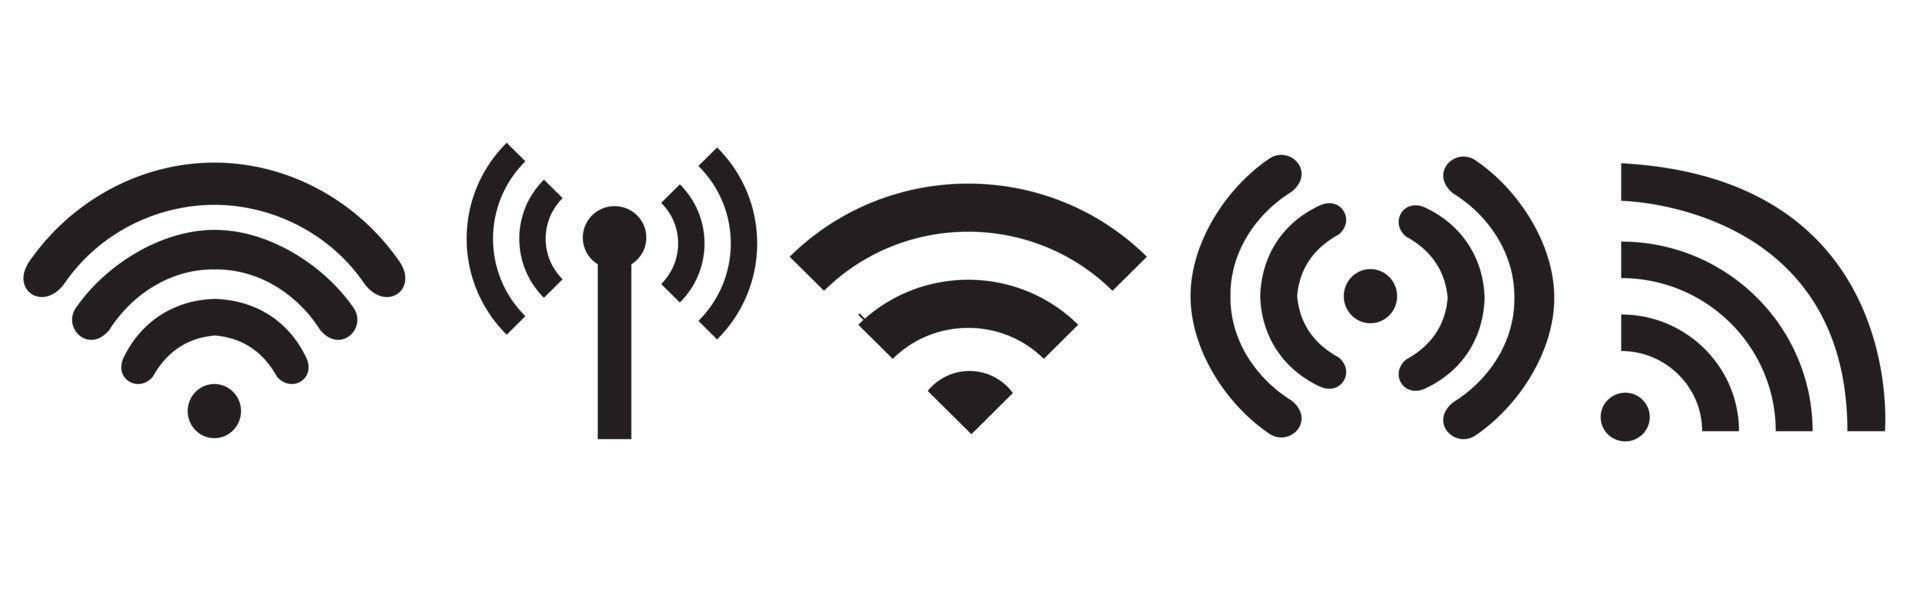 Wi-Fi set icon, set di diverse icone wireless e wifi. illustrazione vettoriale. vettore